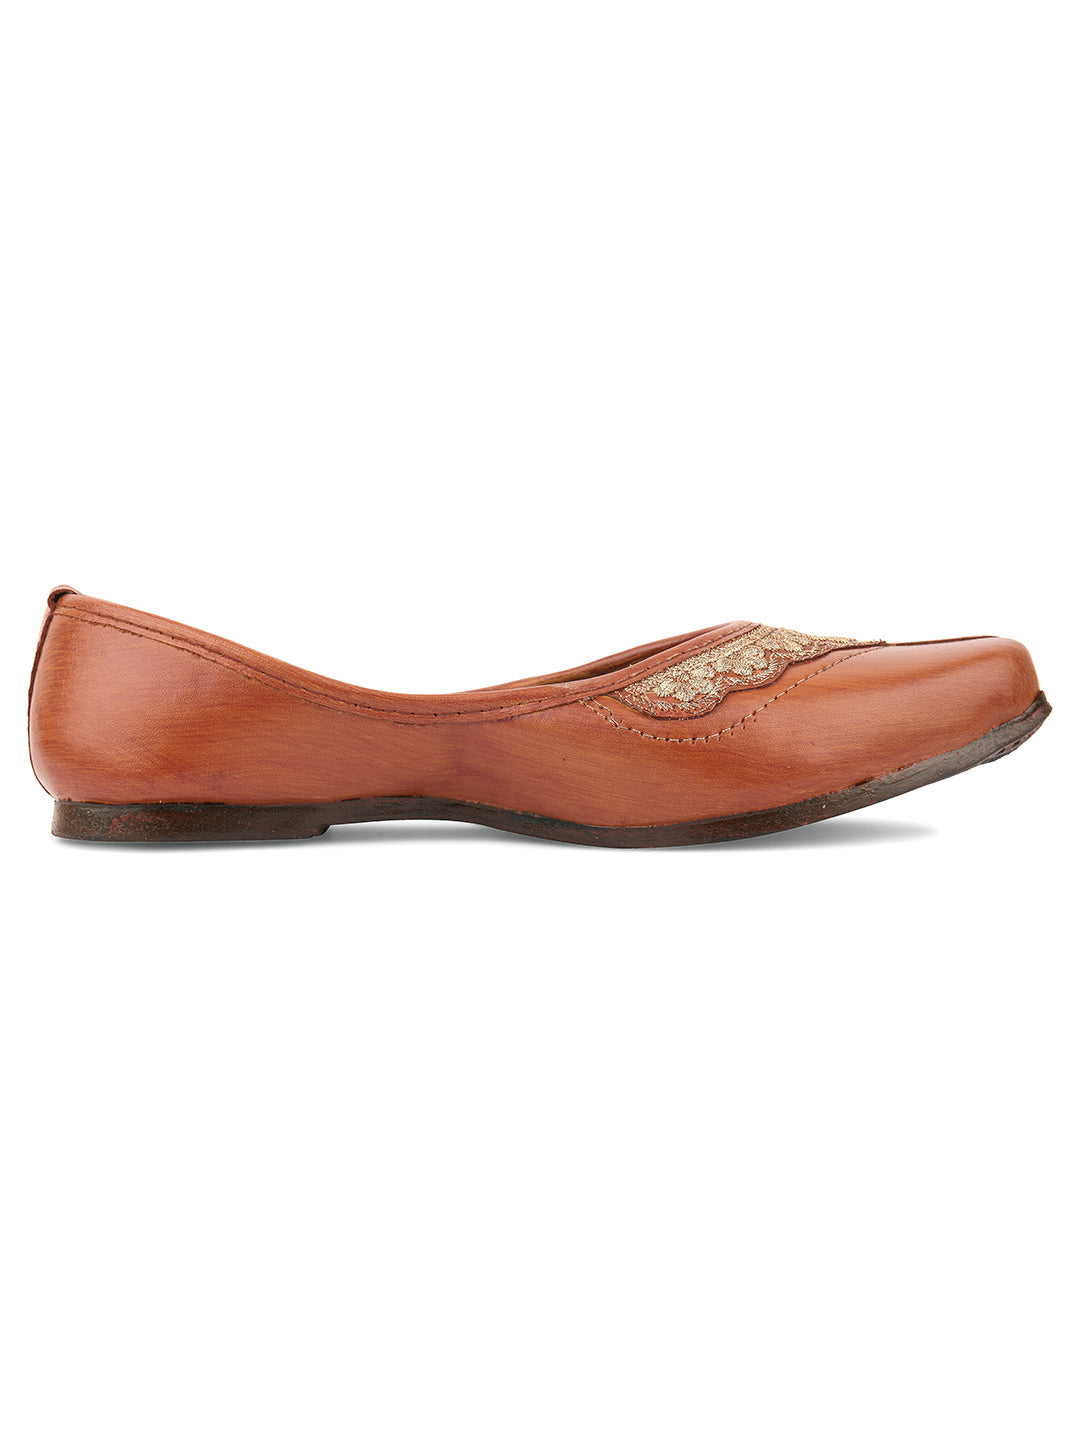 Women's Brown Casuals  Indian Ethnic Comfort Footwear - Desi Colour